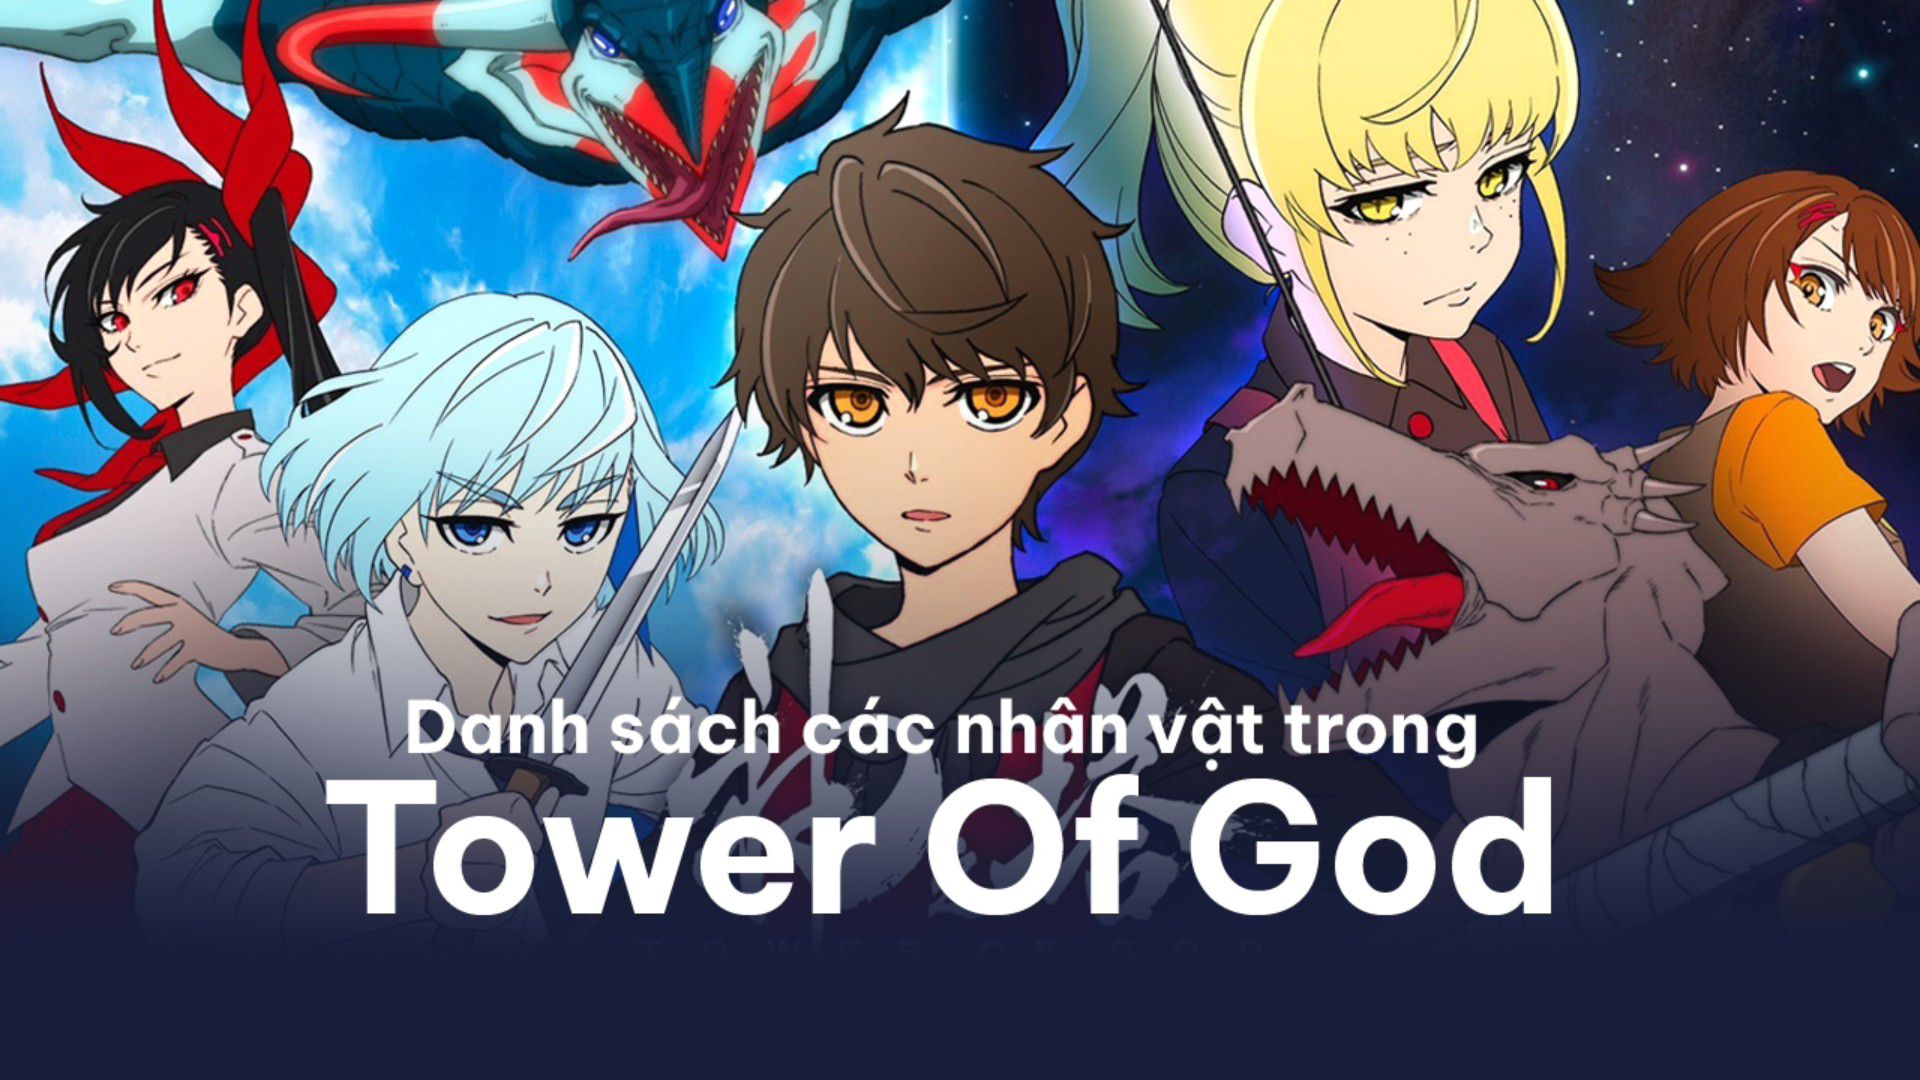 anime tower of god dublado parte 1